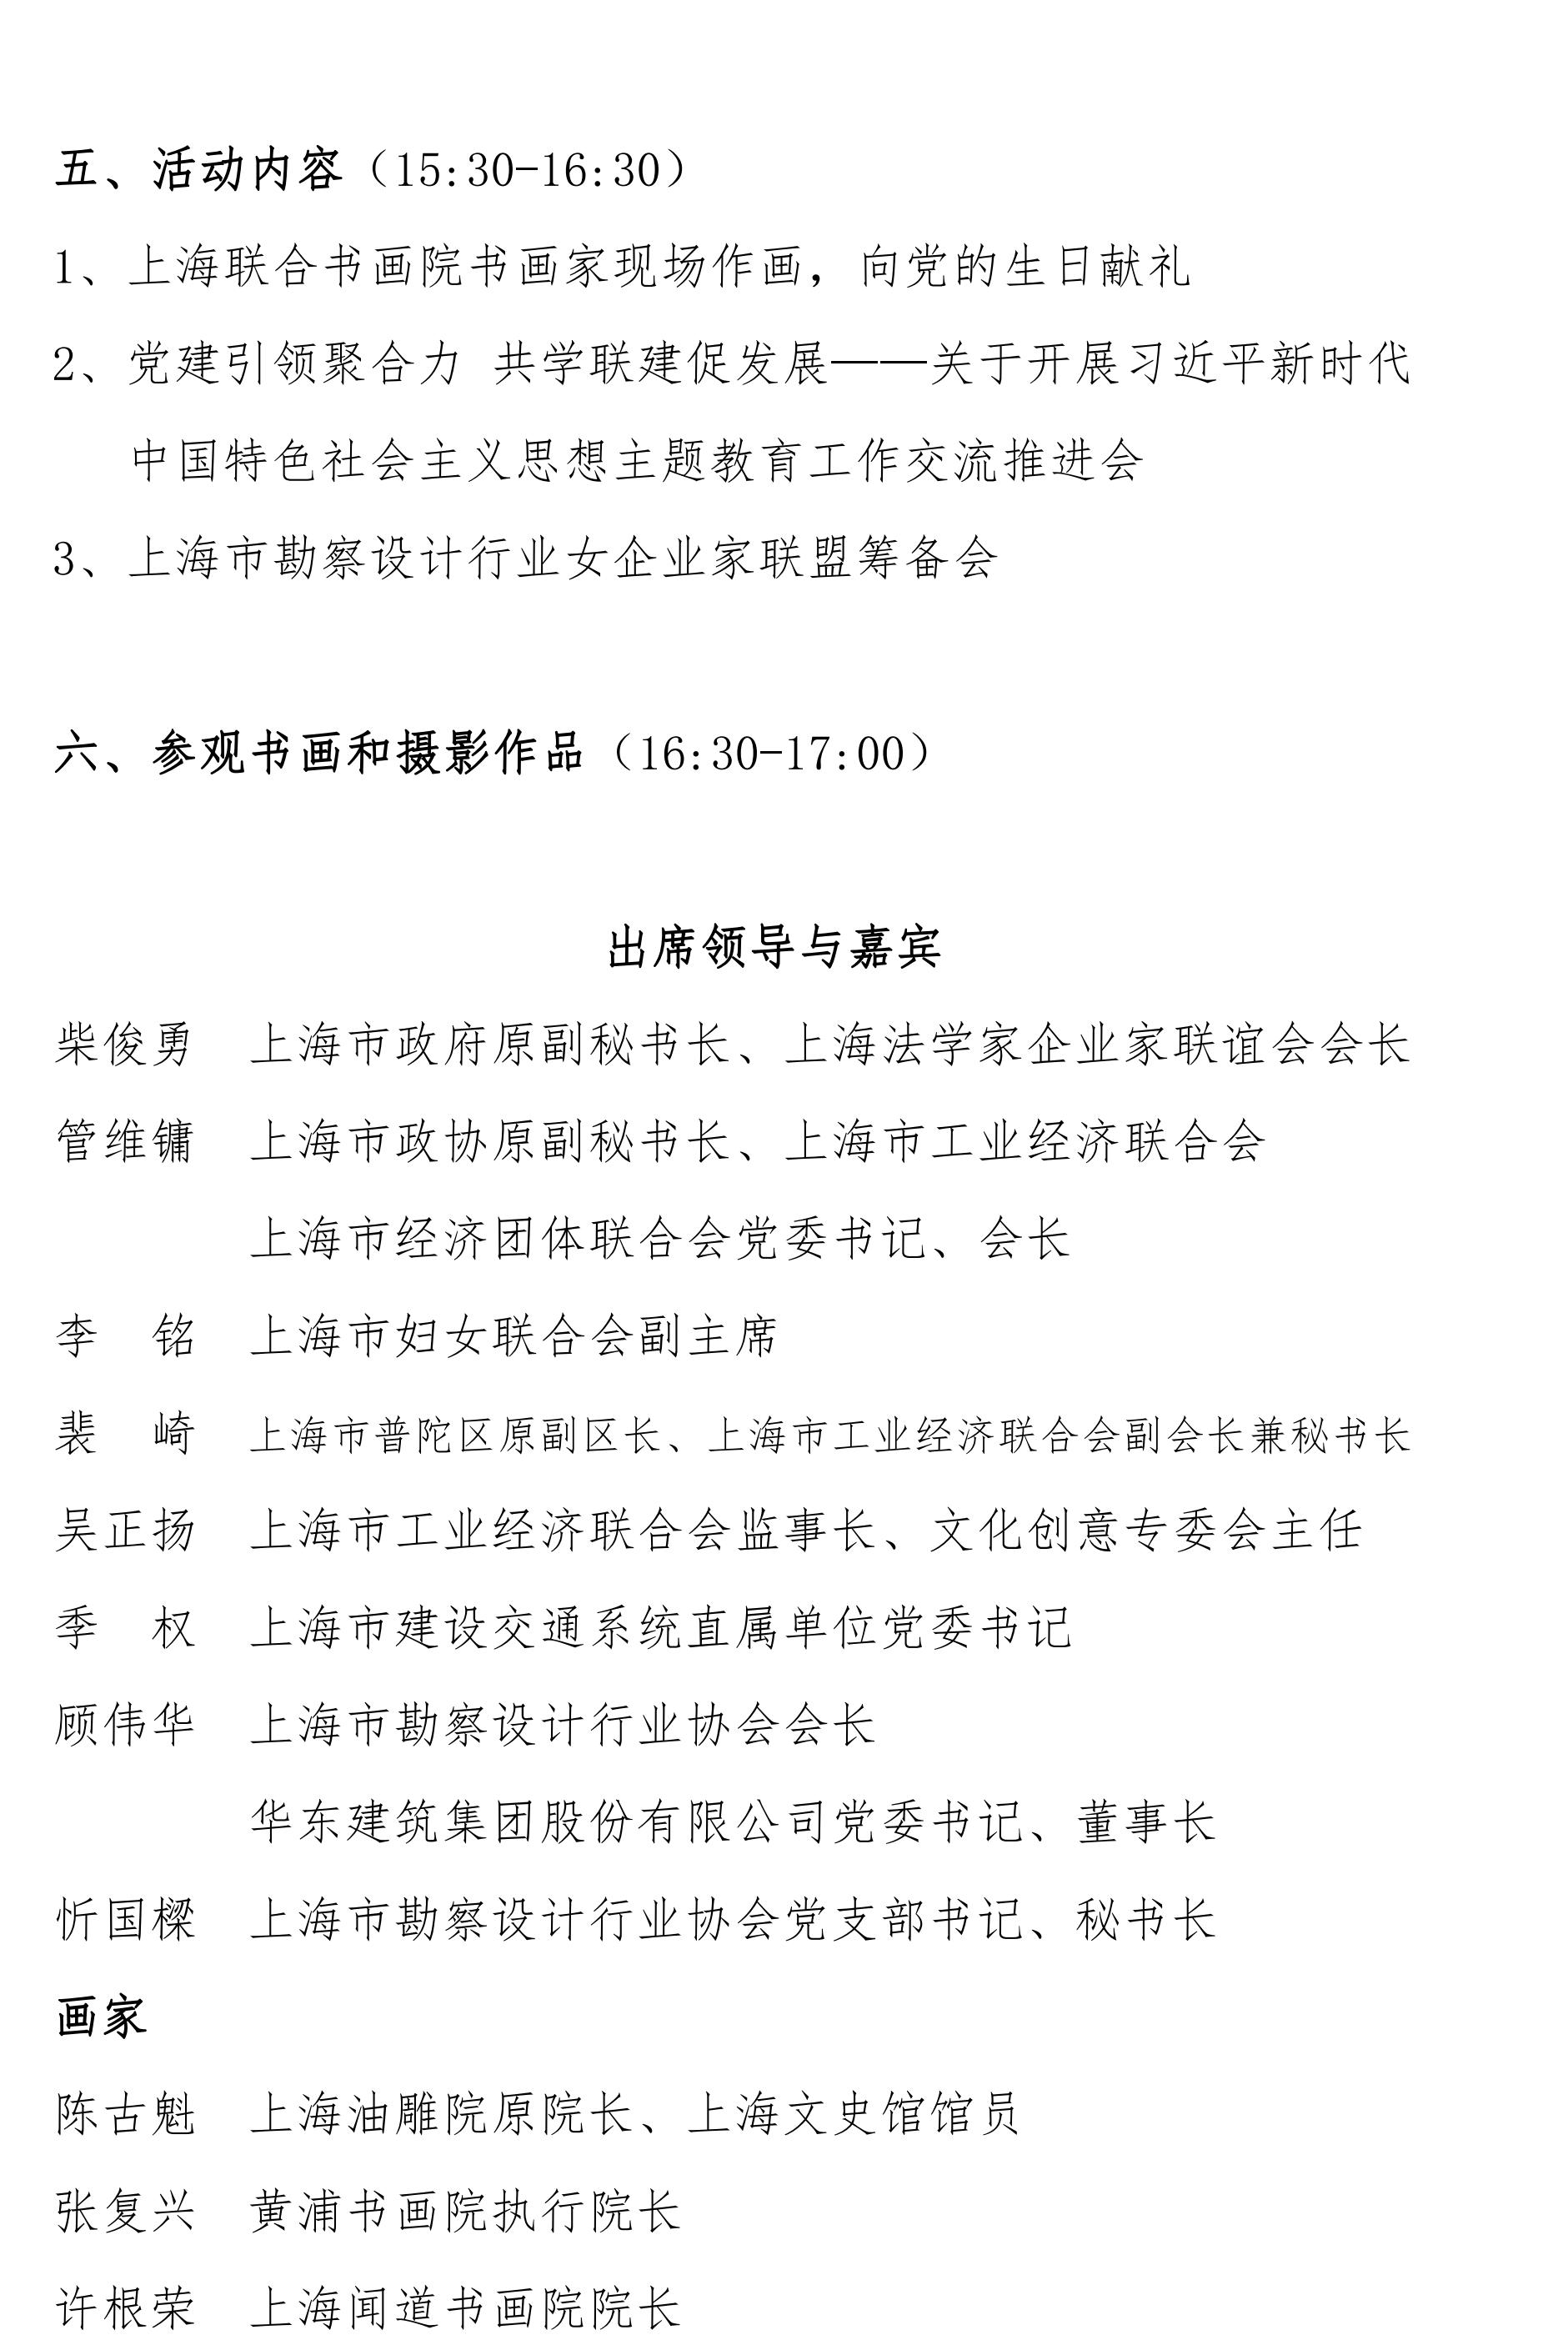 同携手、共发展、创辉煌——关于举办中国共产党诞辰纪念日活动的通知(6)_02.jpg